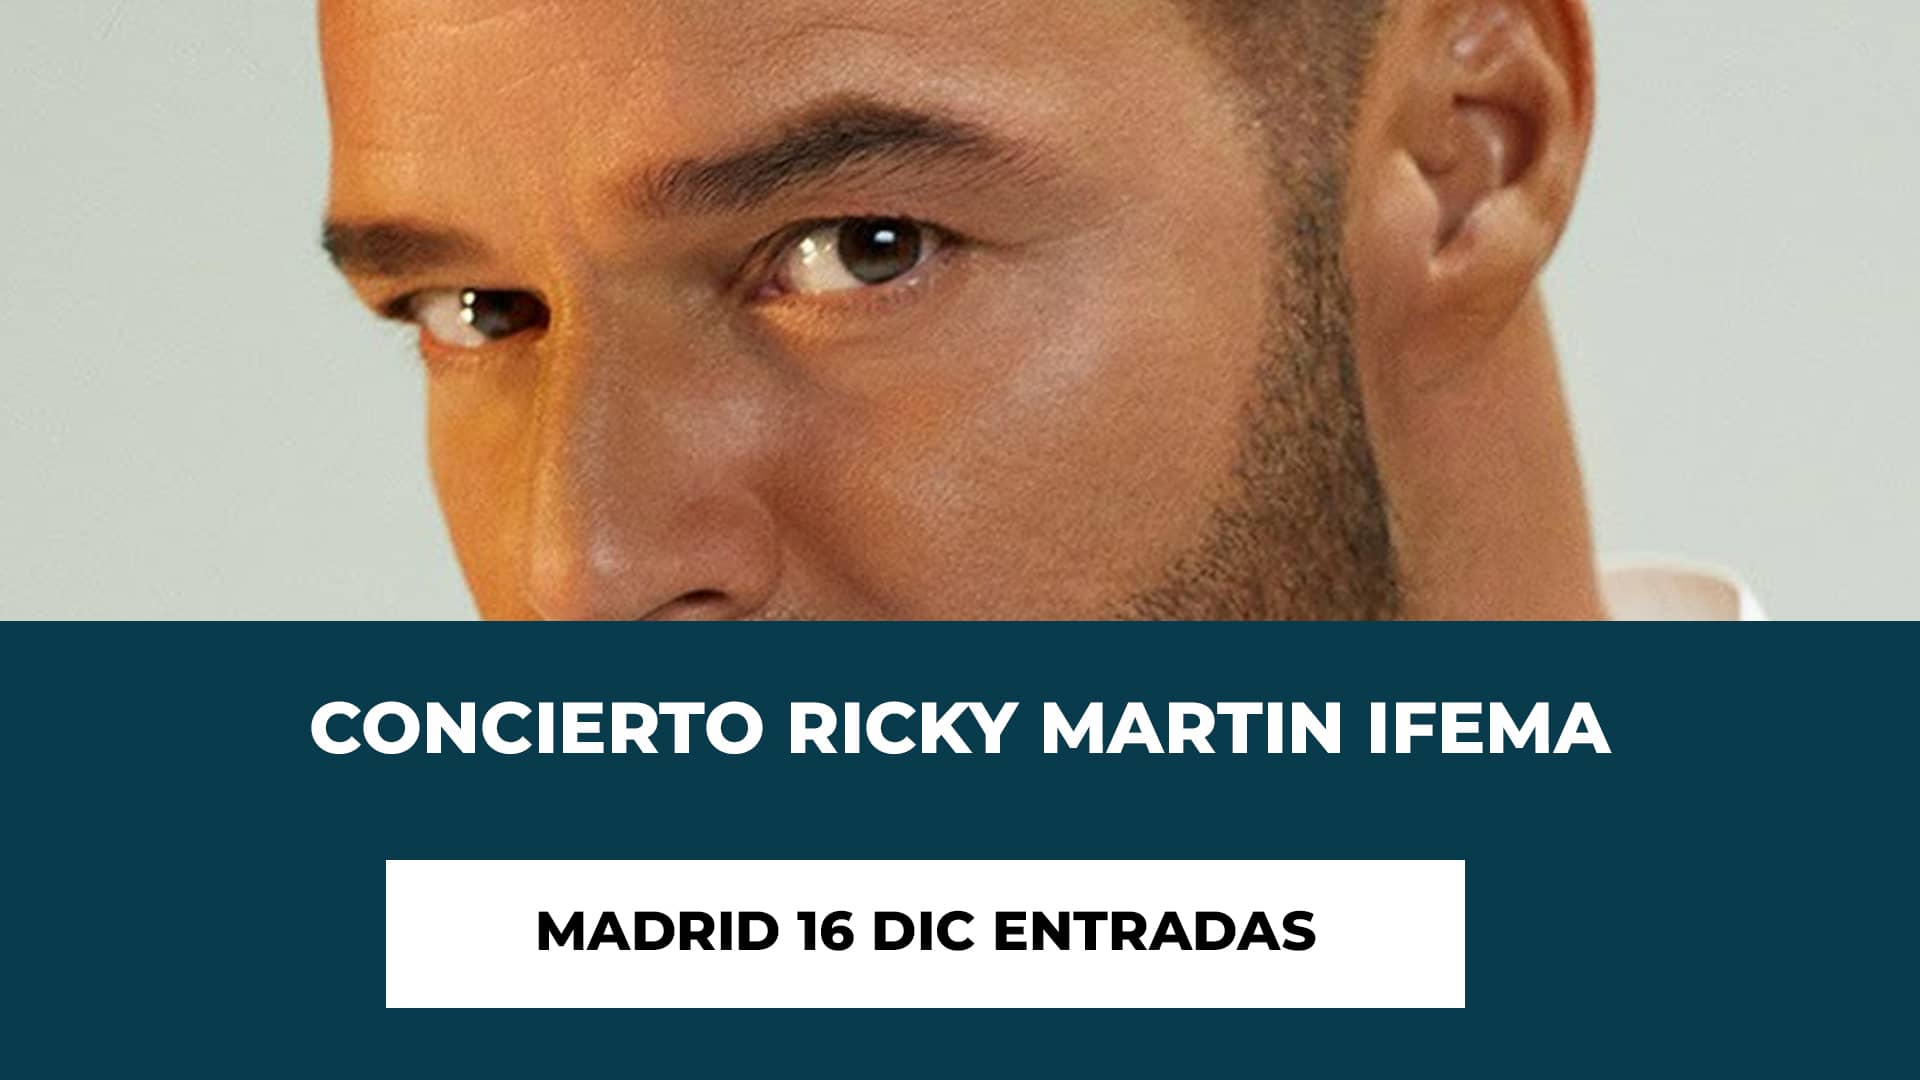 Concierto Ricky Martin IFEMA Madrid 16 Dic Entradas - Fecha - Hora de Inicio - Recinto- Precios de las entradas